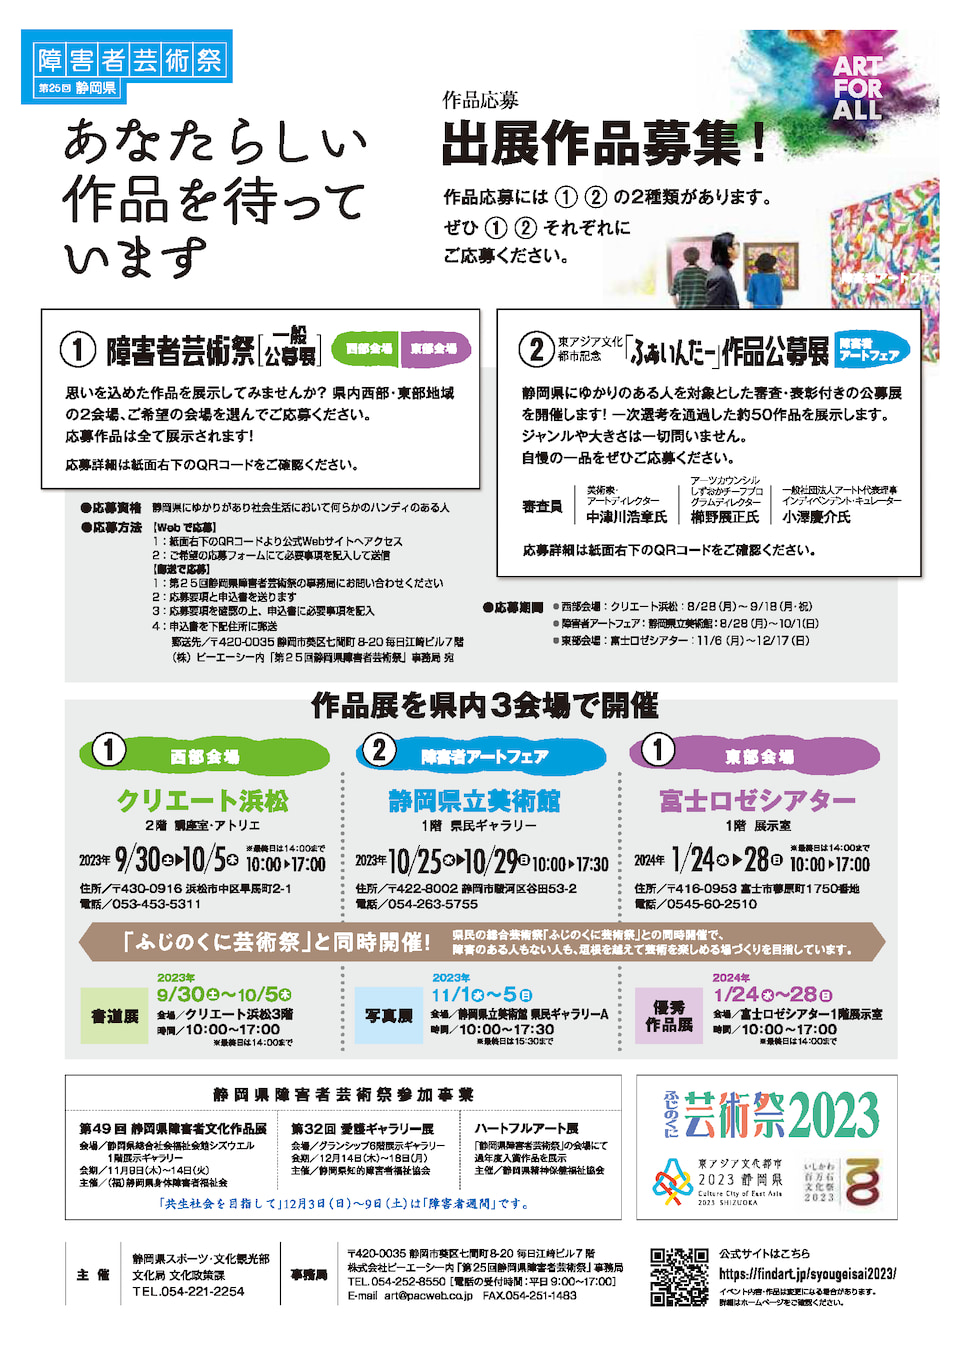 【画像】第25回静岡県障害者芸術祭チラシ（裏）
詳しくは、静岡県障害者芸術祭の公式ウェブサイトをご確認ください。